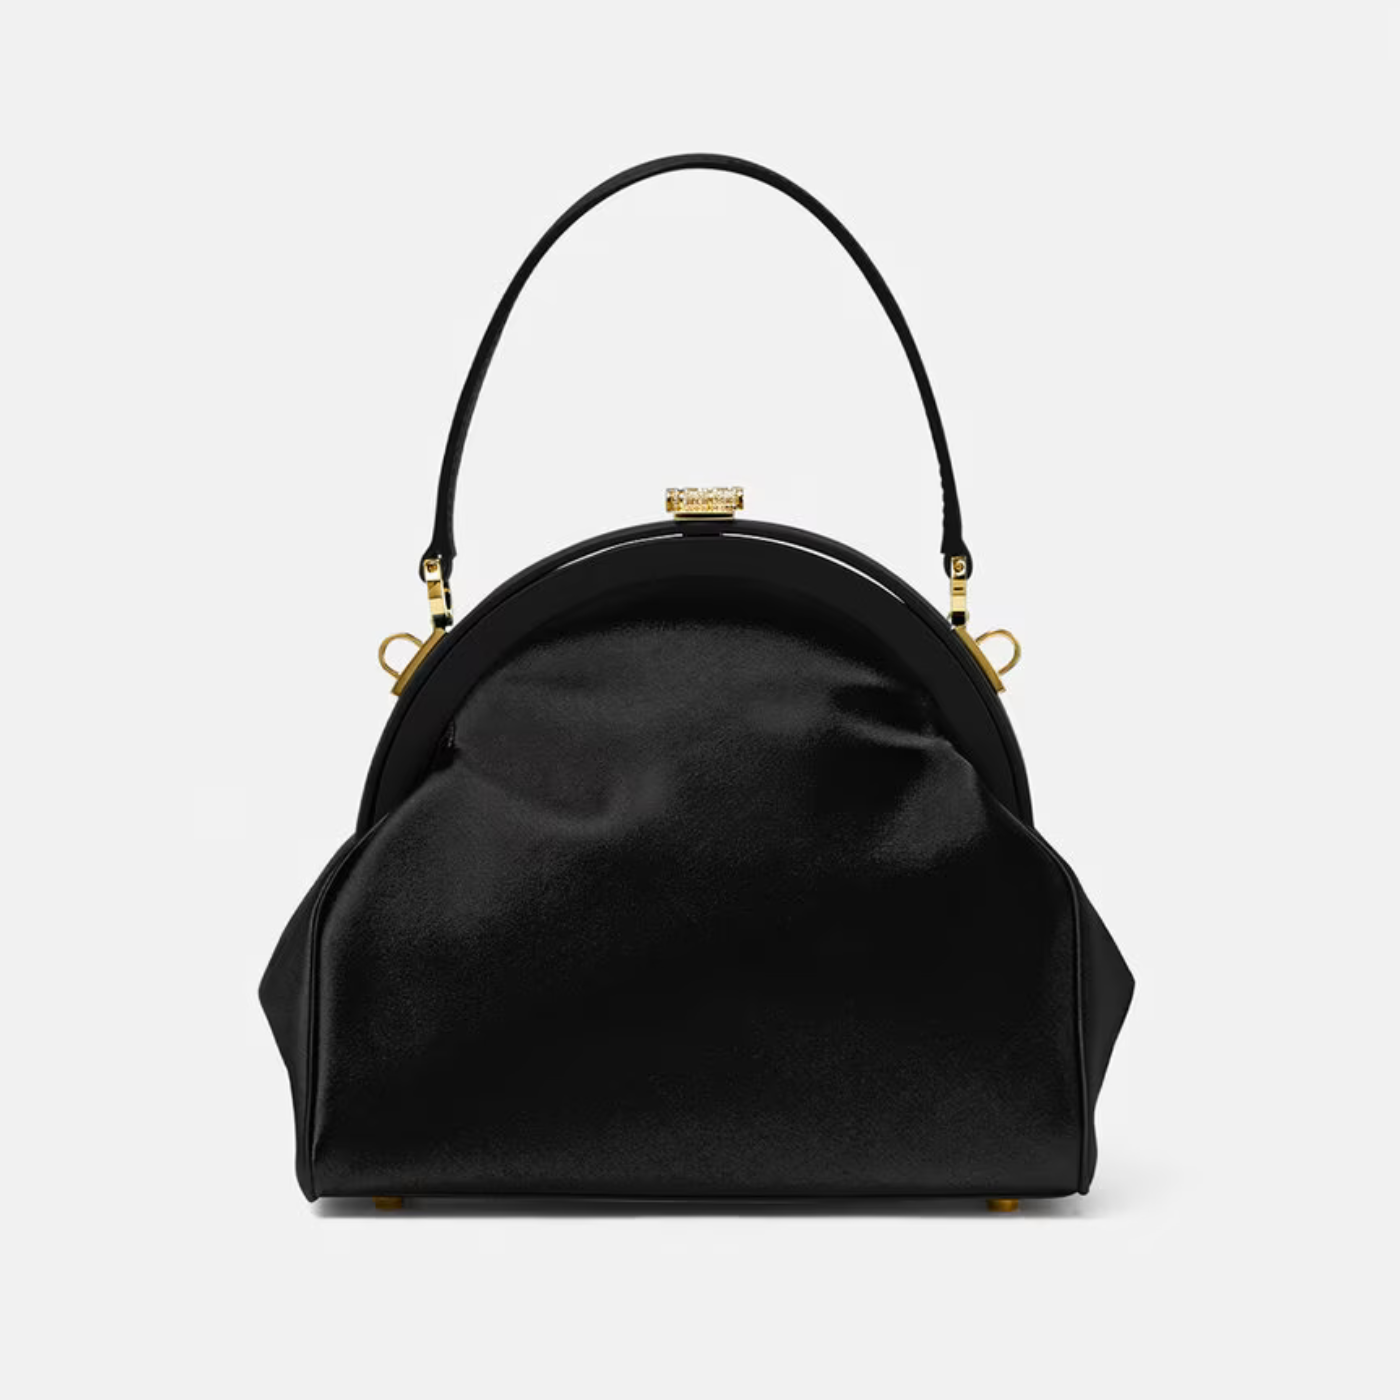 Crystal Medusa '95 Satin Handbag in Black Handbags VERSACE - LOLAMIR